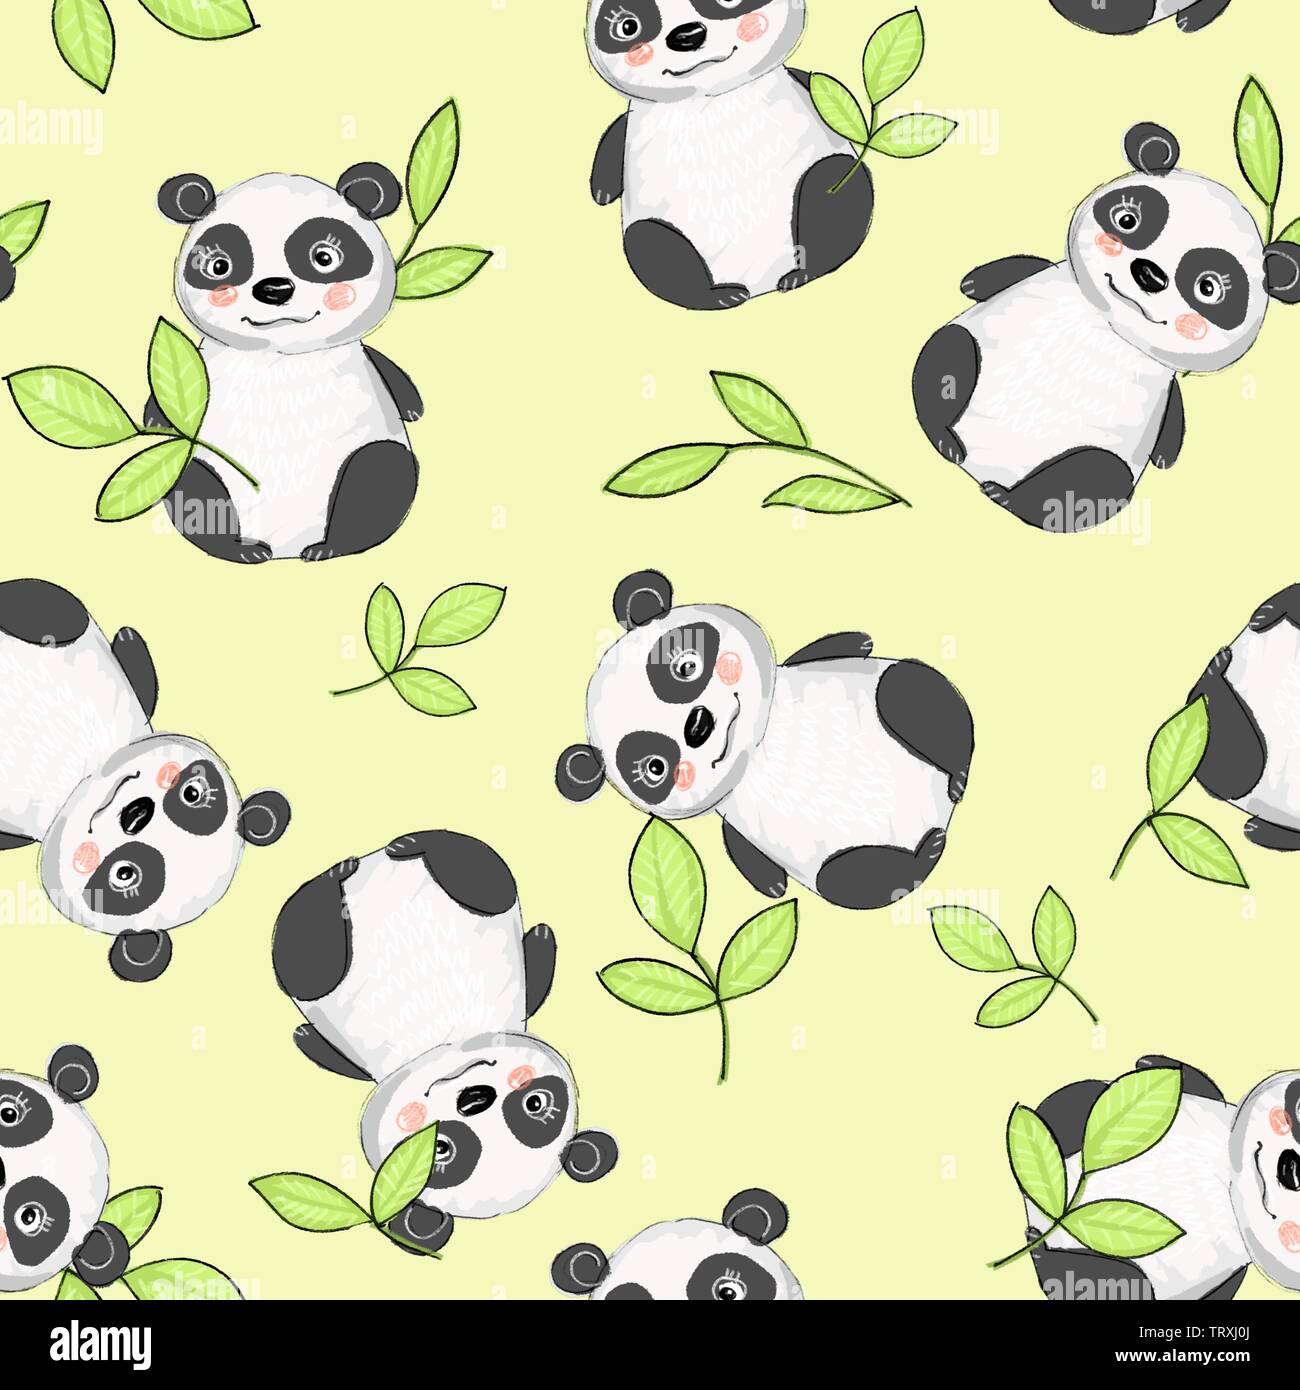 Cartoon panda bear pattern Stock Photo